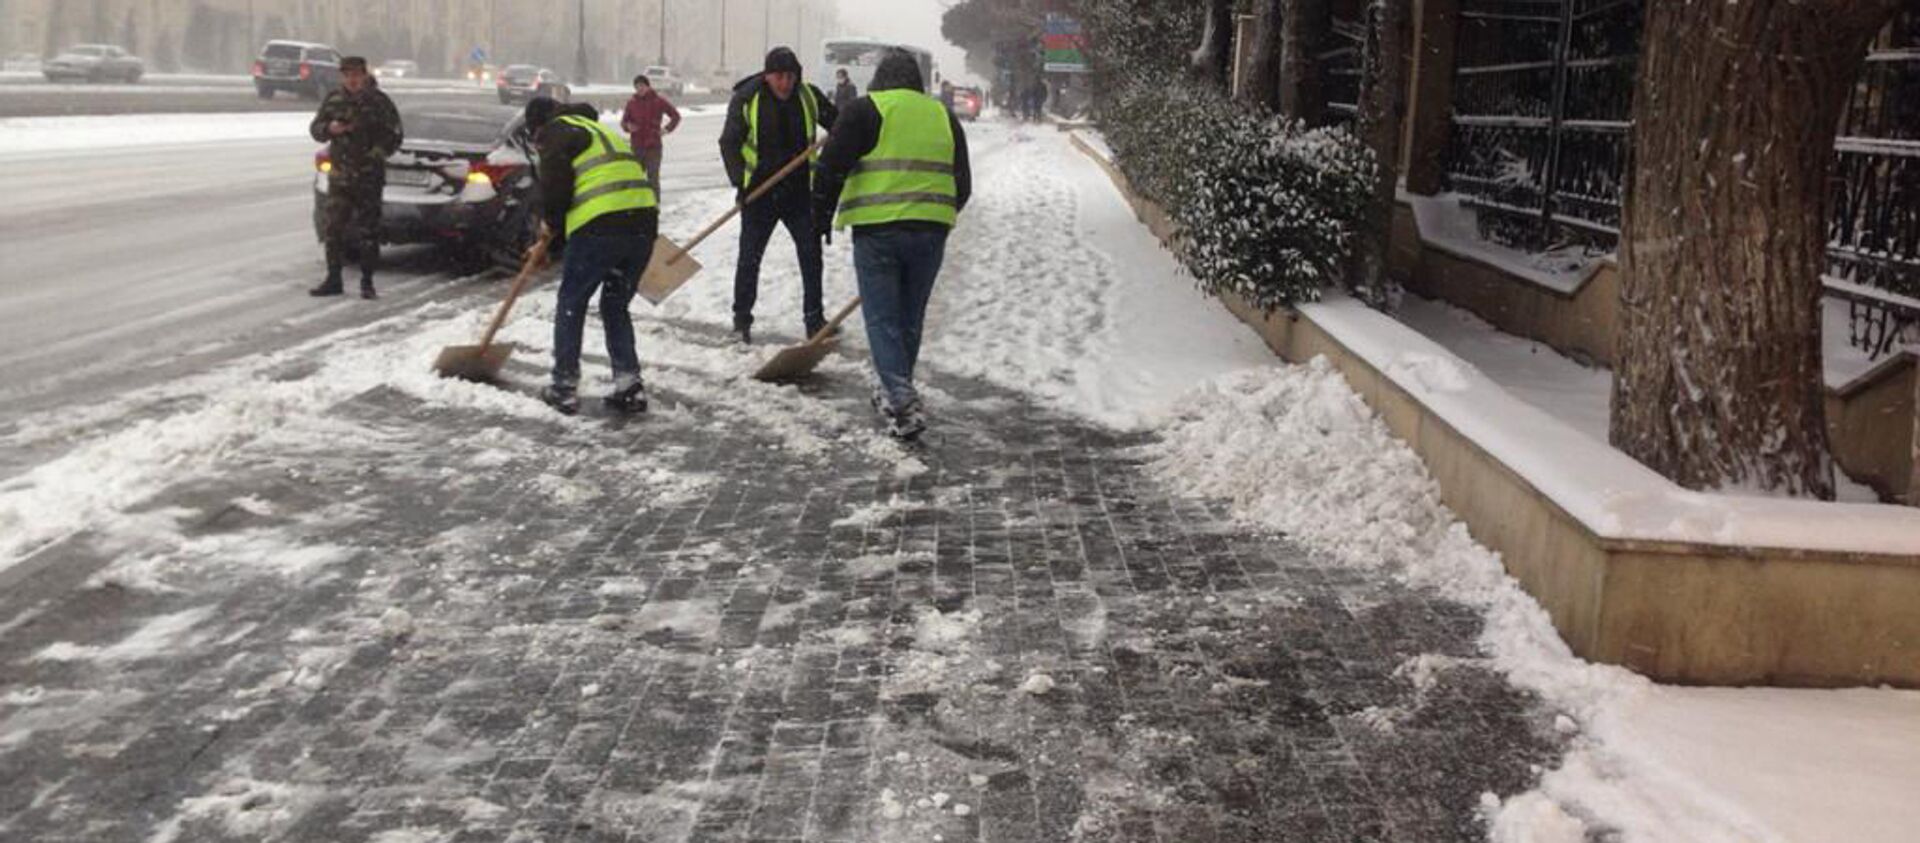 Люди очищают лопатой снег в Баку, 24 февраля 2021 года - Sputnik Азербайджан, 1920, 24.02.2021